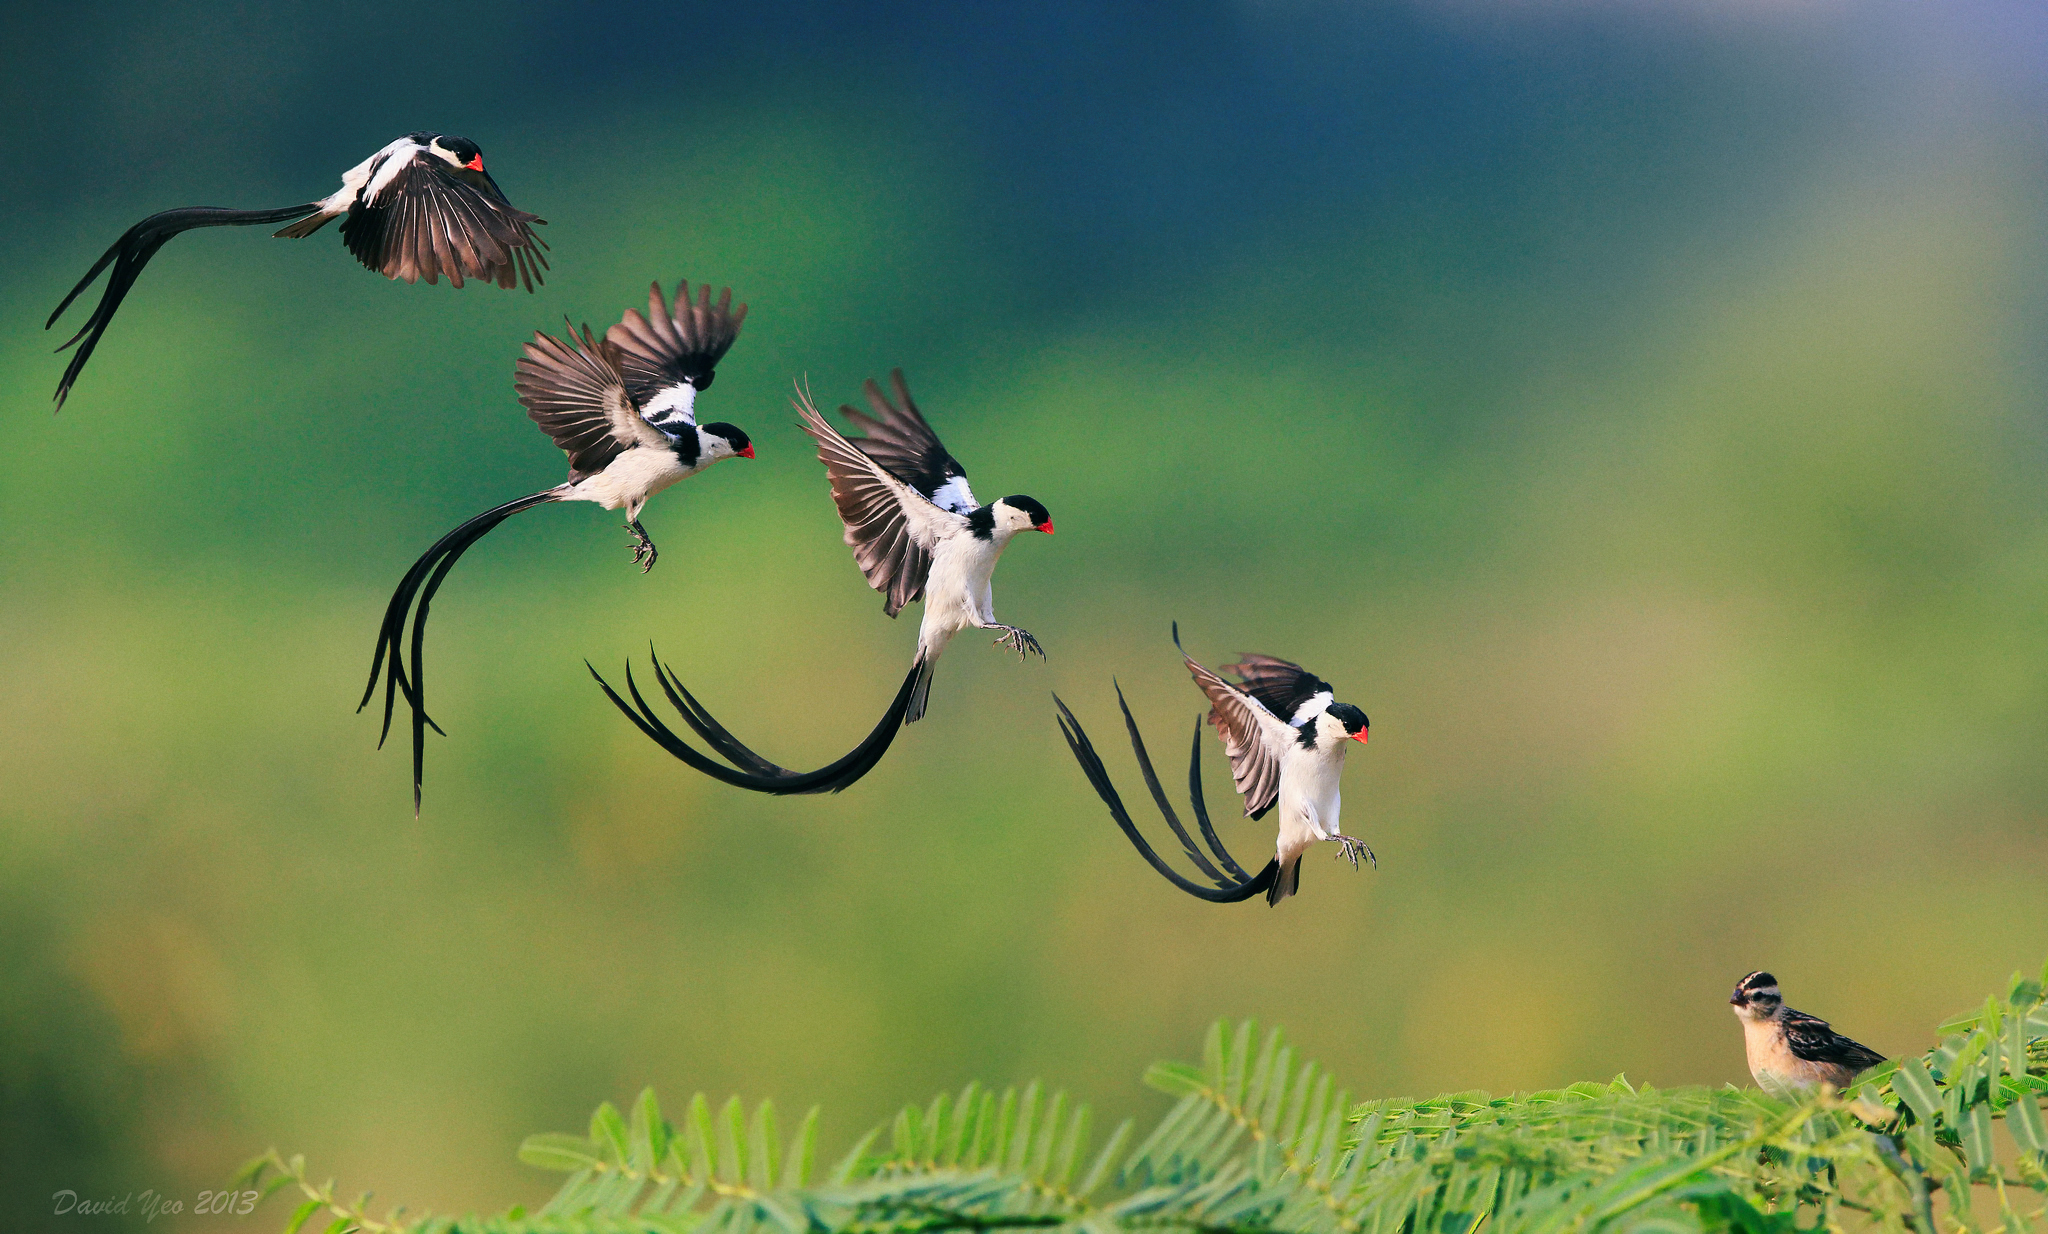 Bird животное. Птица в полете. Красивые птицы. Красивая птица в полете. Экзотические птицы.